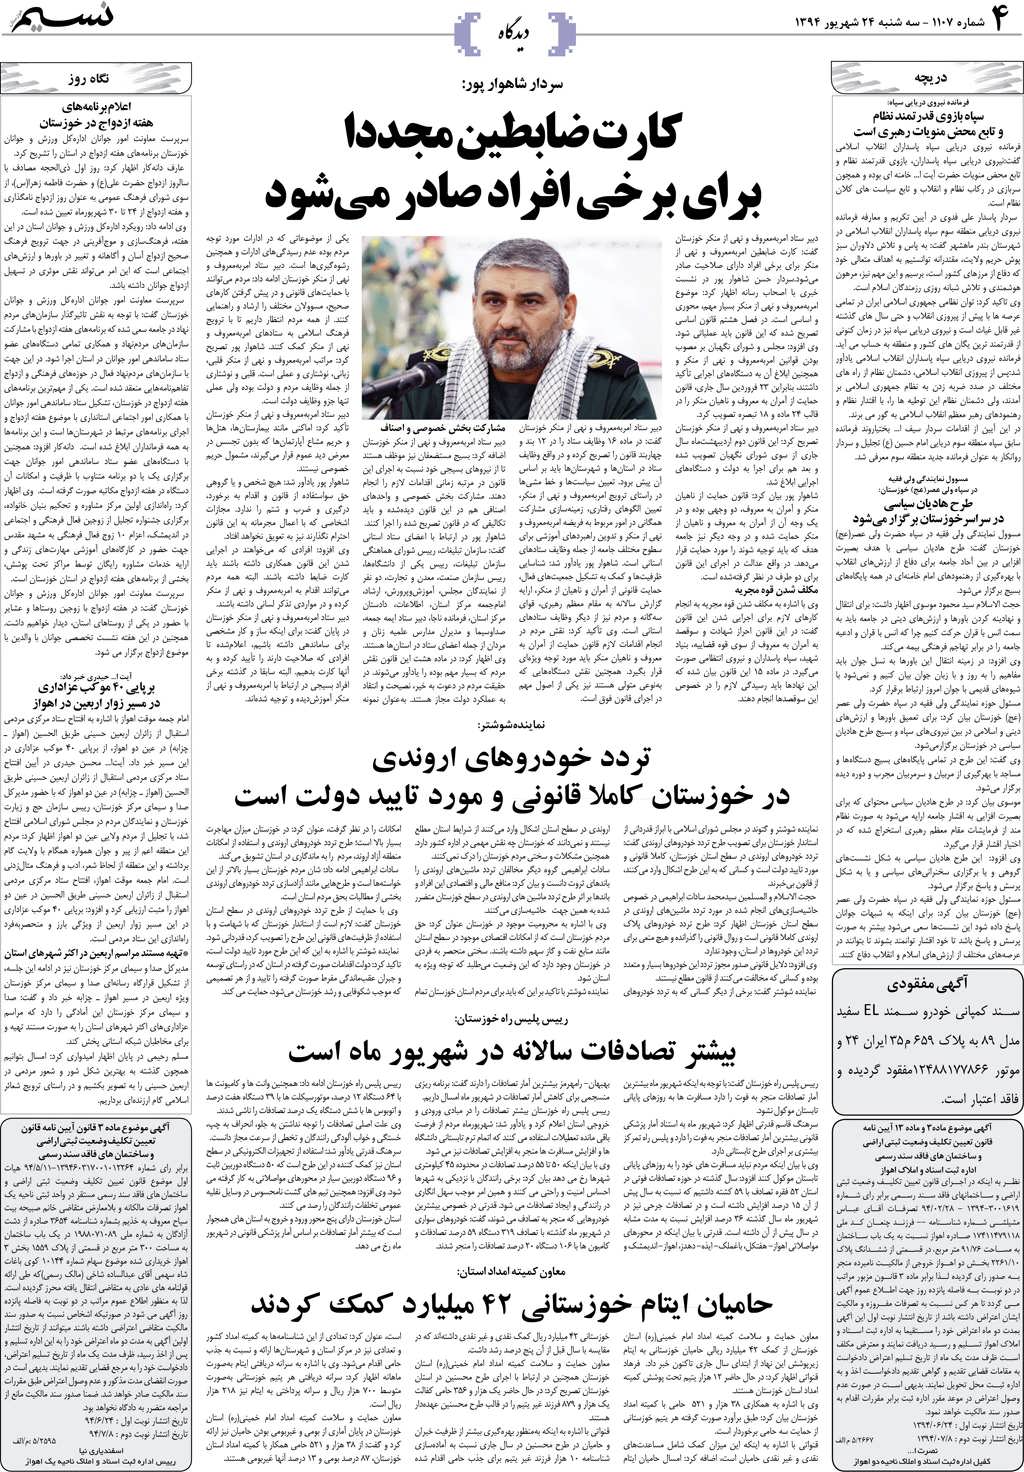 صفحه دیدگاه روزنامه نسیم شماره 1107